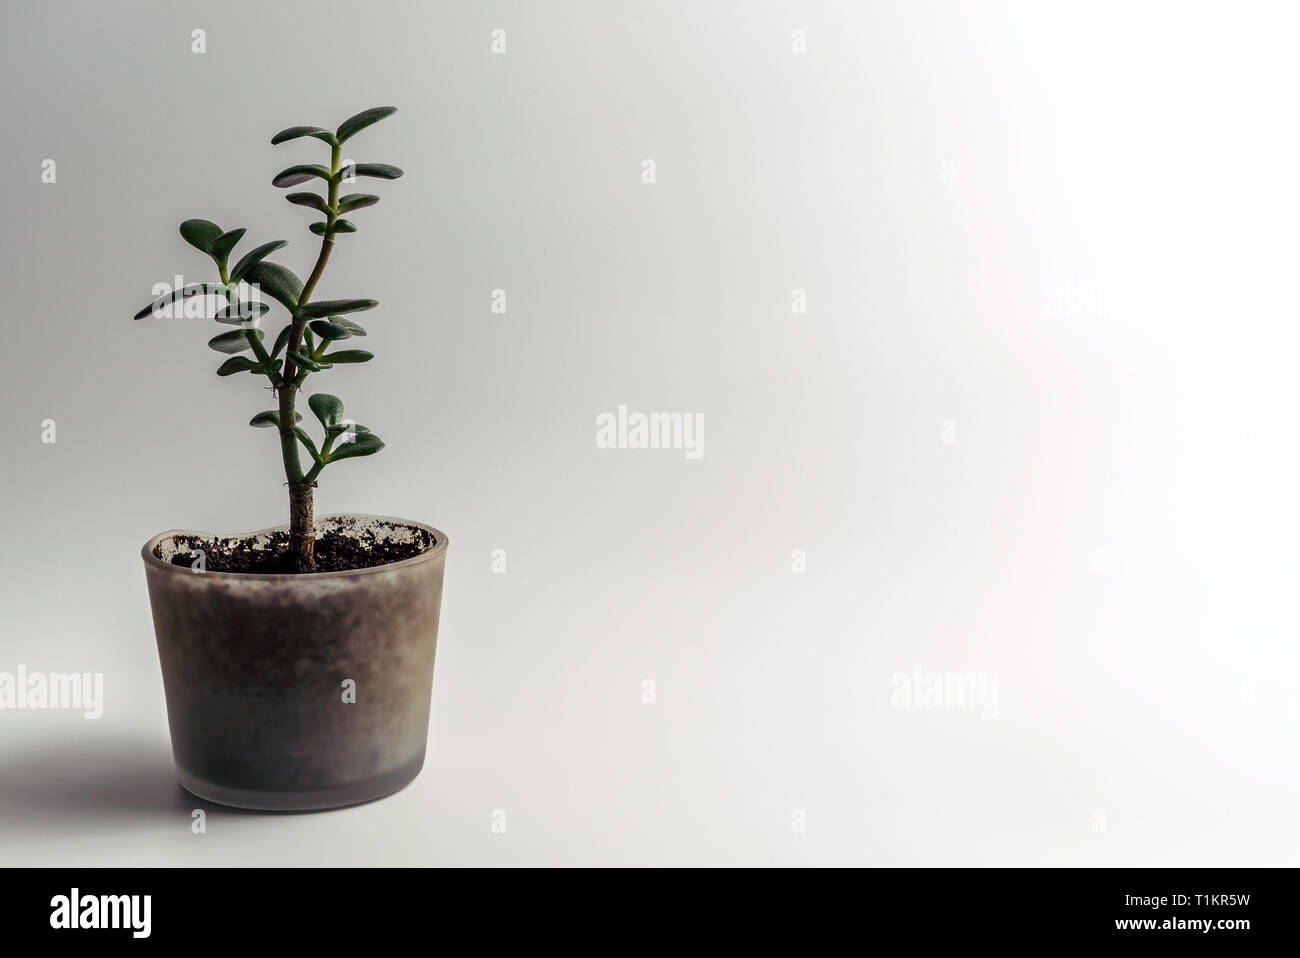 Green Jade Plant Crassula ovata plante d'intérieur, Feng Shui, arbre d'argent en pot succulentes dans un pot en verre moderne avec sol organique isolated on white Banque D'Images